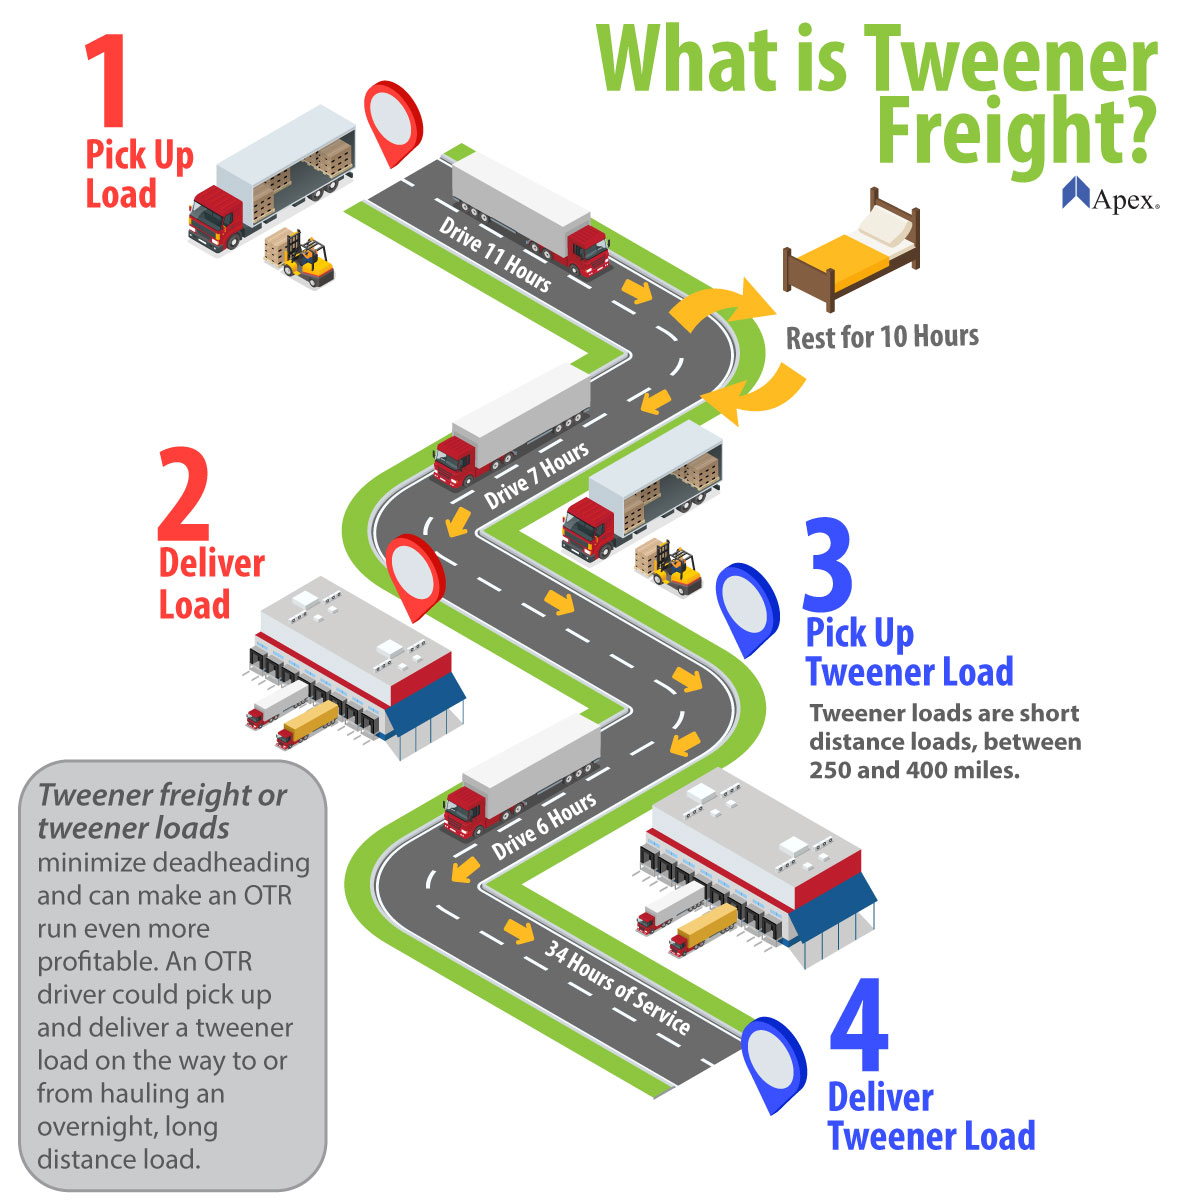 What is Tweener Freight? Infographic describing tweener freight